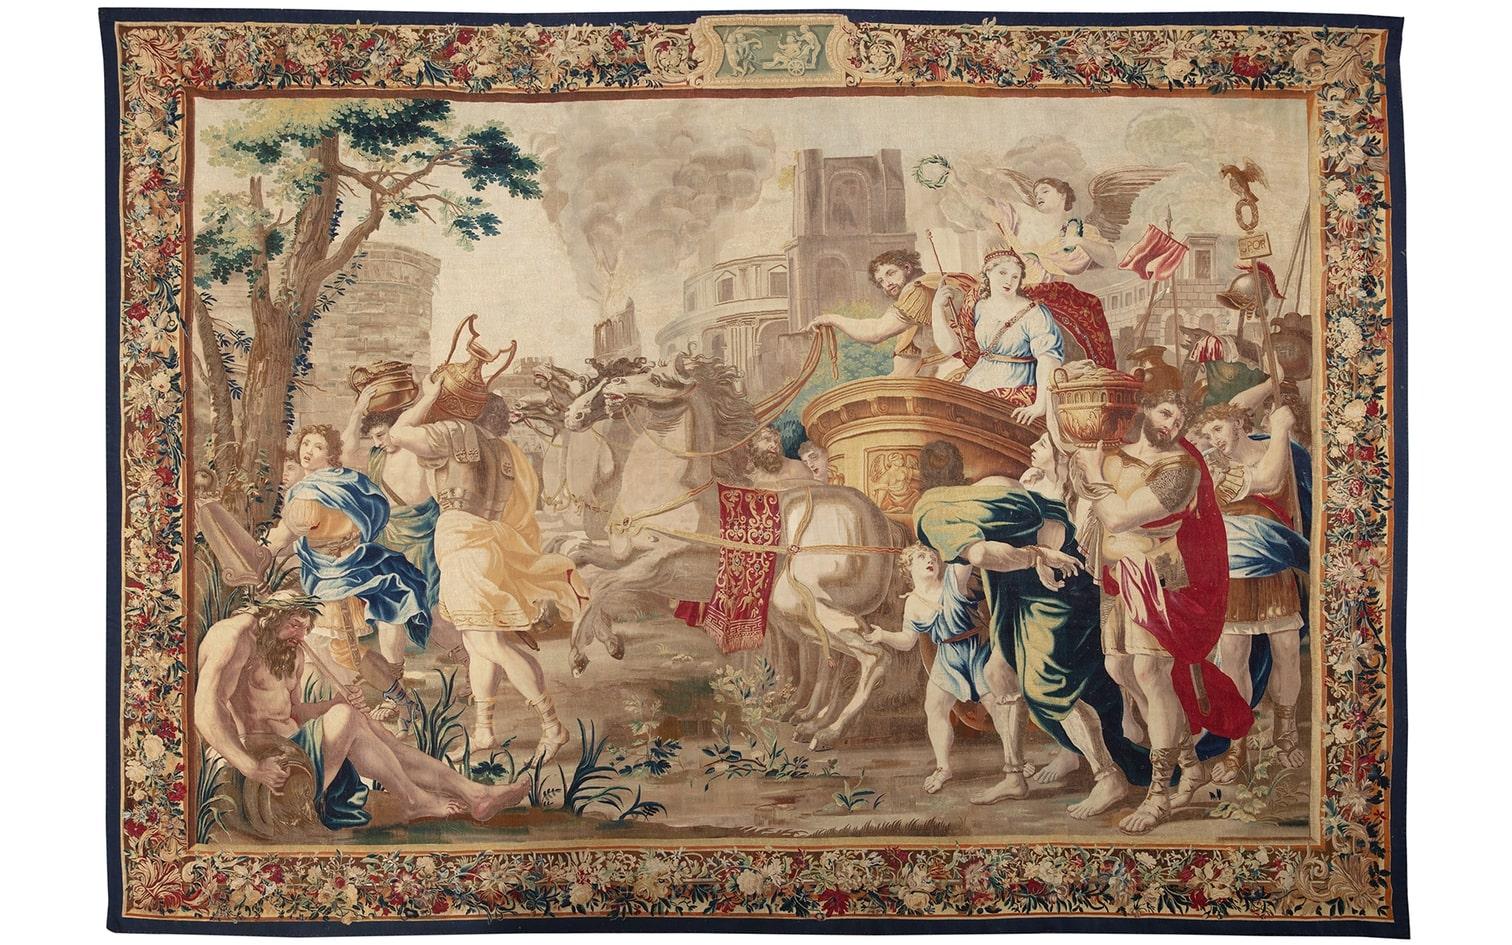 Ein Brüsseler Wandteppich mit Marc Anton und Kleopatra,
Nach Entwürfen von charles poerson (1609-1667), zweite Hälfte 17.
- zweite Hälfte 17. Jahrhundert

Eigentum einer Bildungseinrichtung aus dem Mittleren Westen

MATERIALIEN : Wolle und